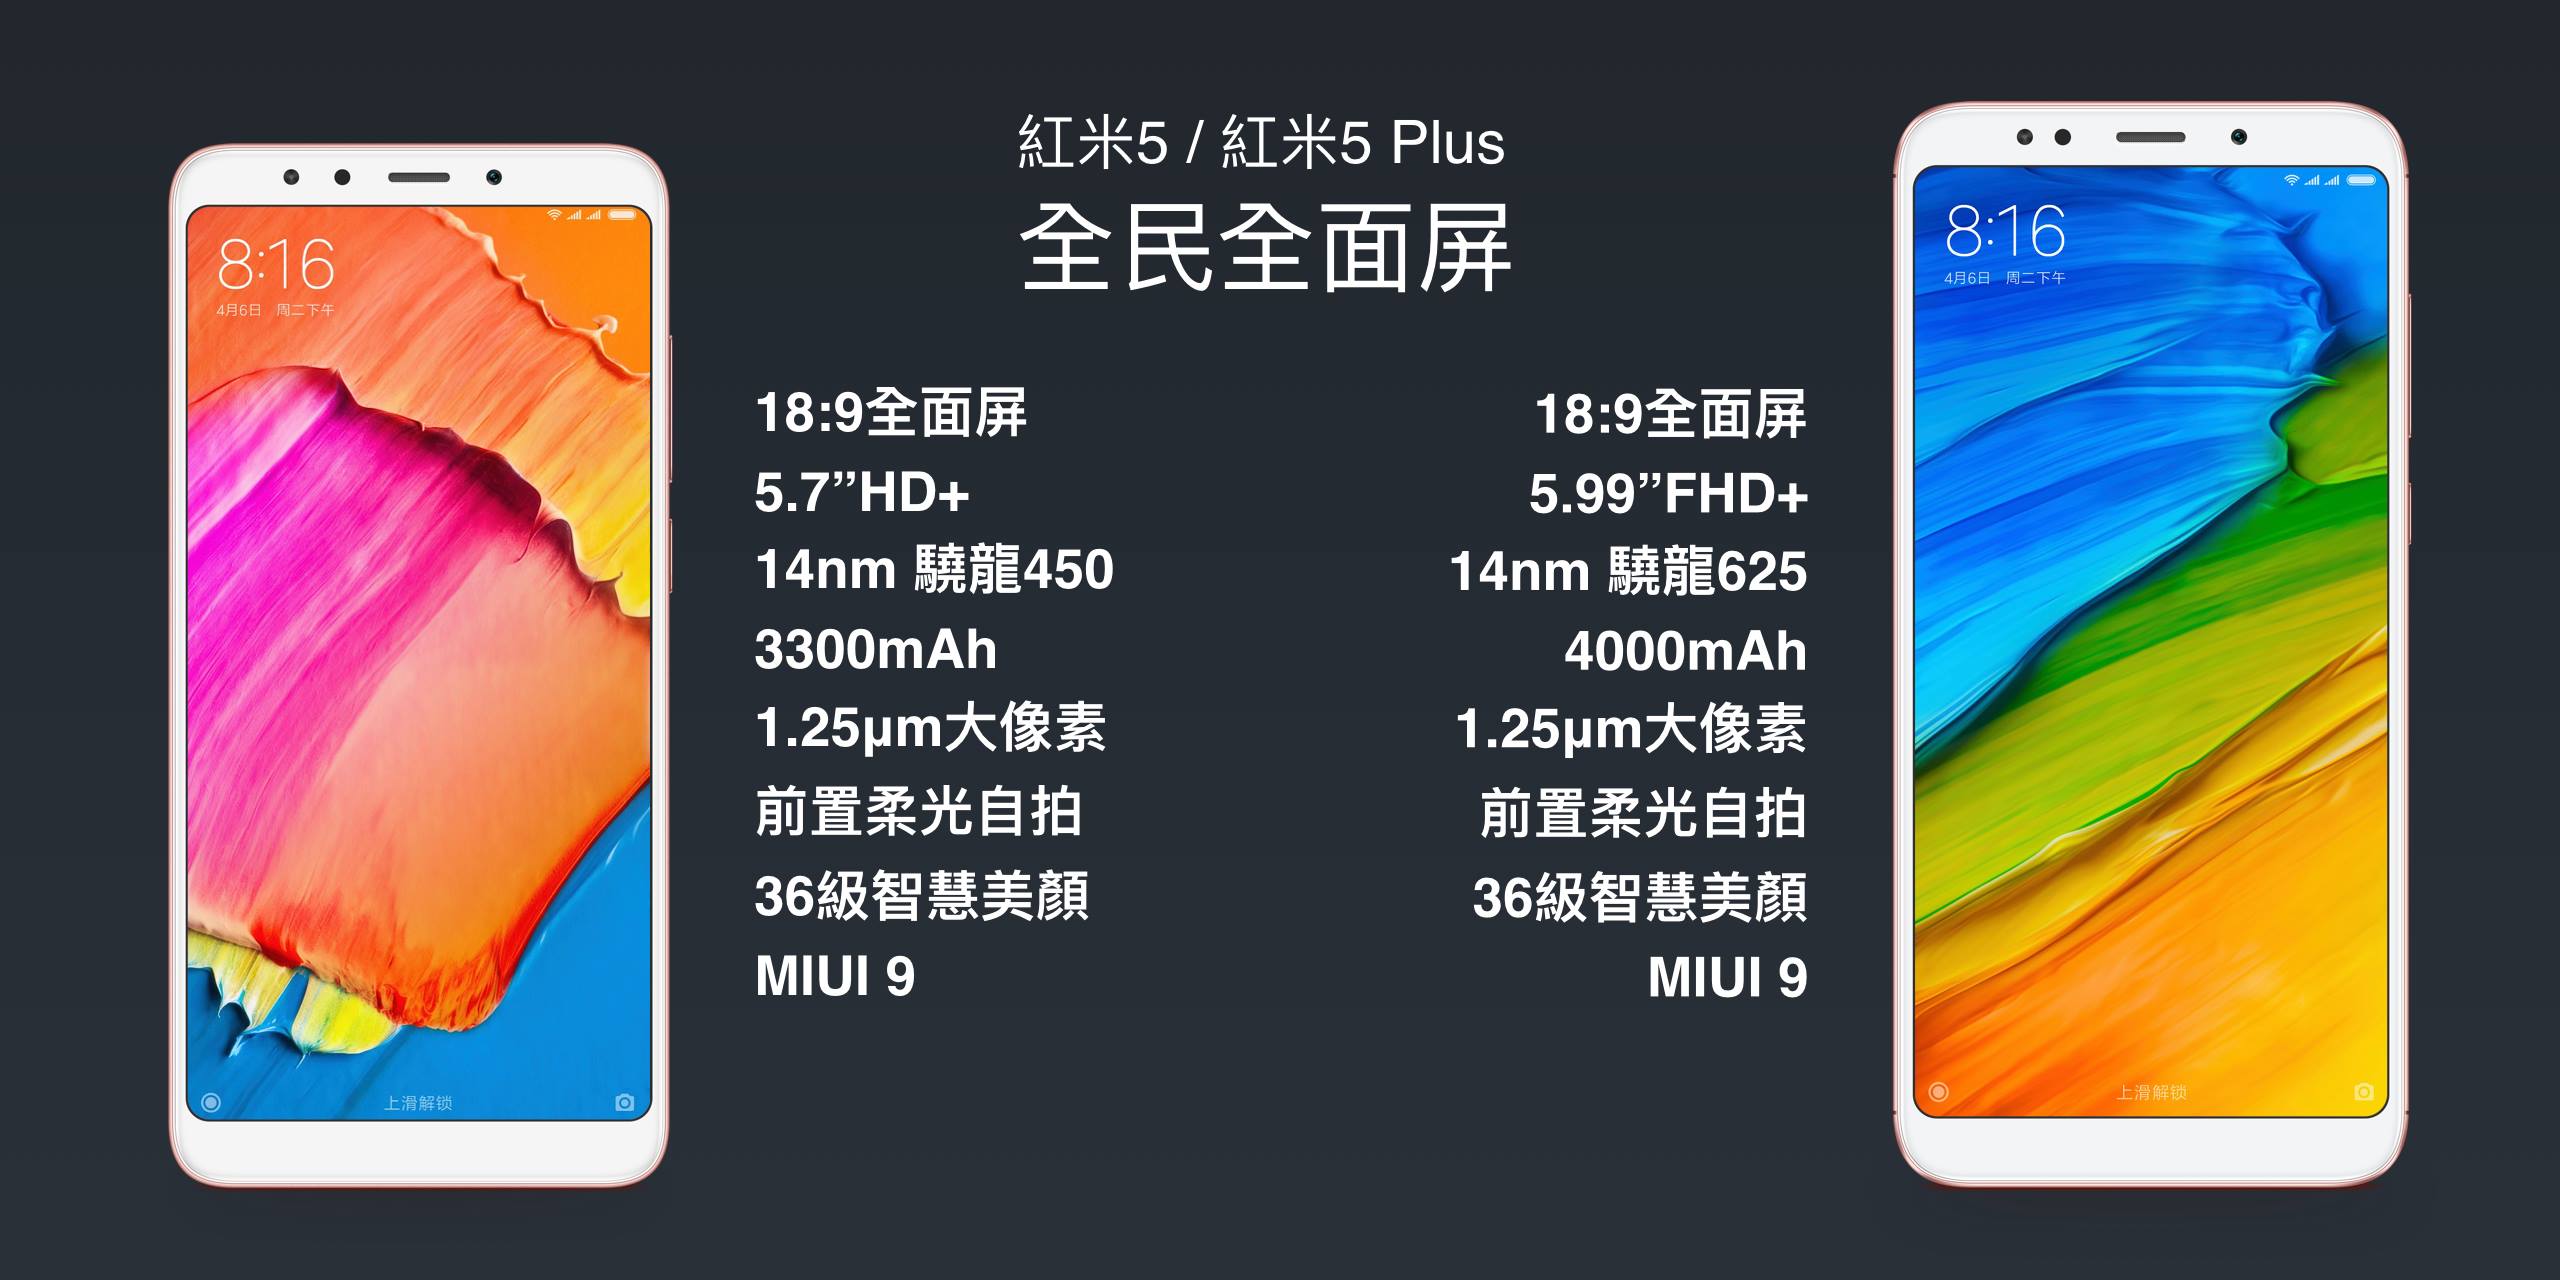 小米平价18:9全面屏产品红米5、红米5Plus在中国发表，确定会在台推出